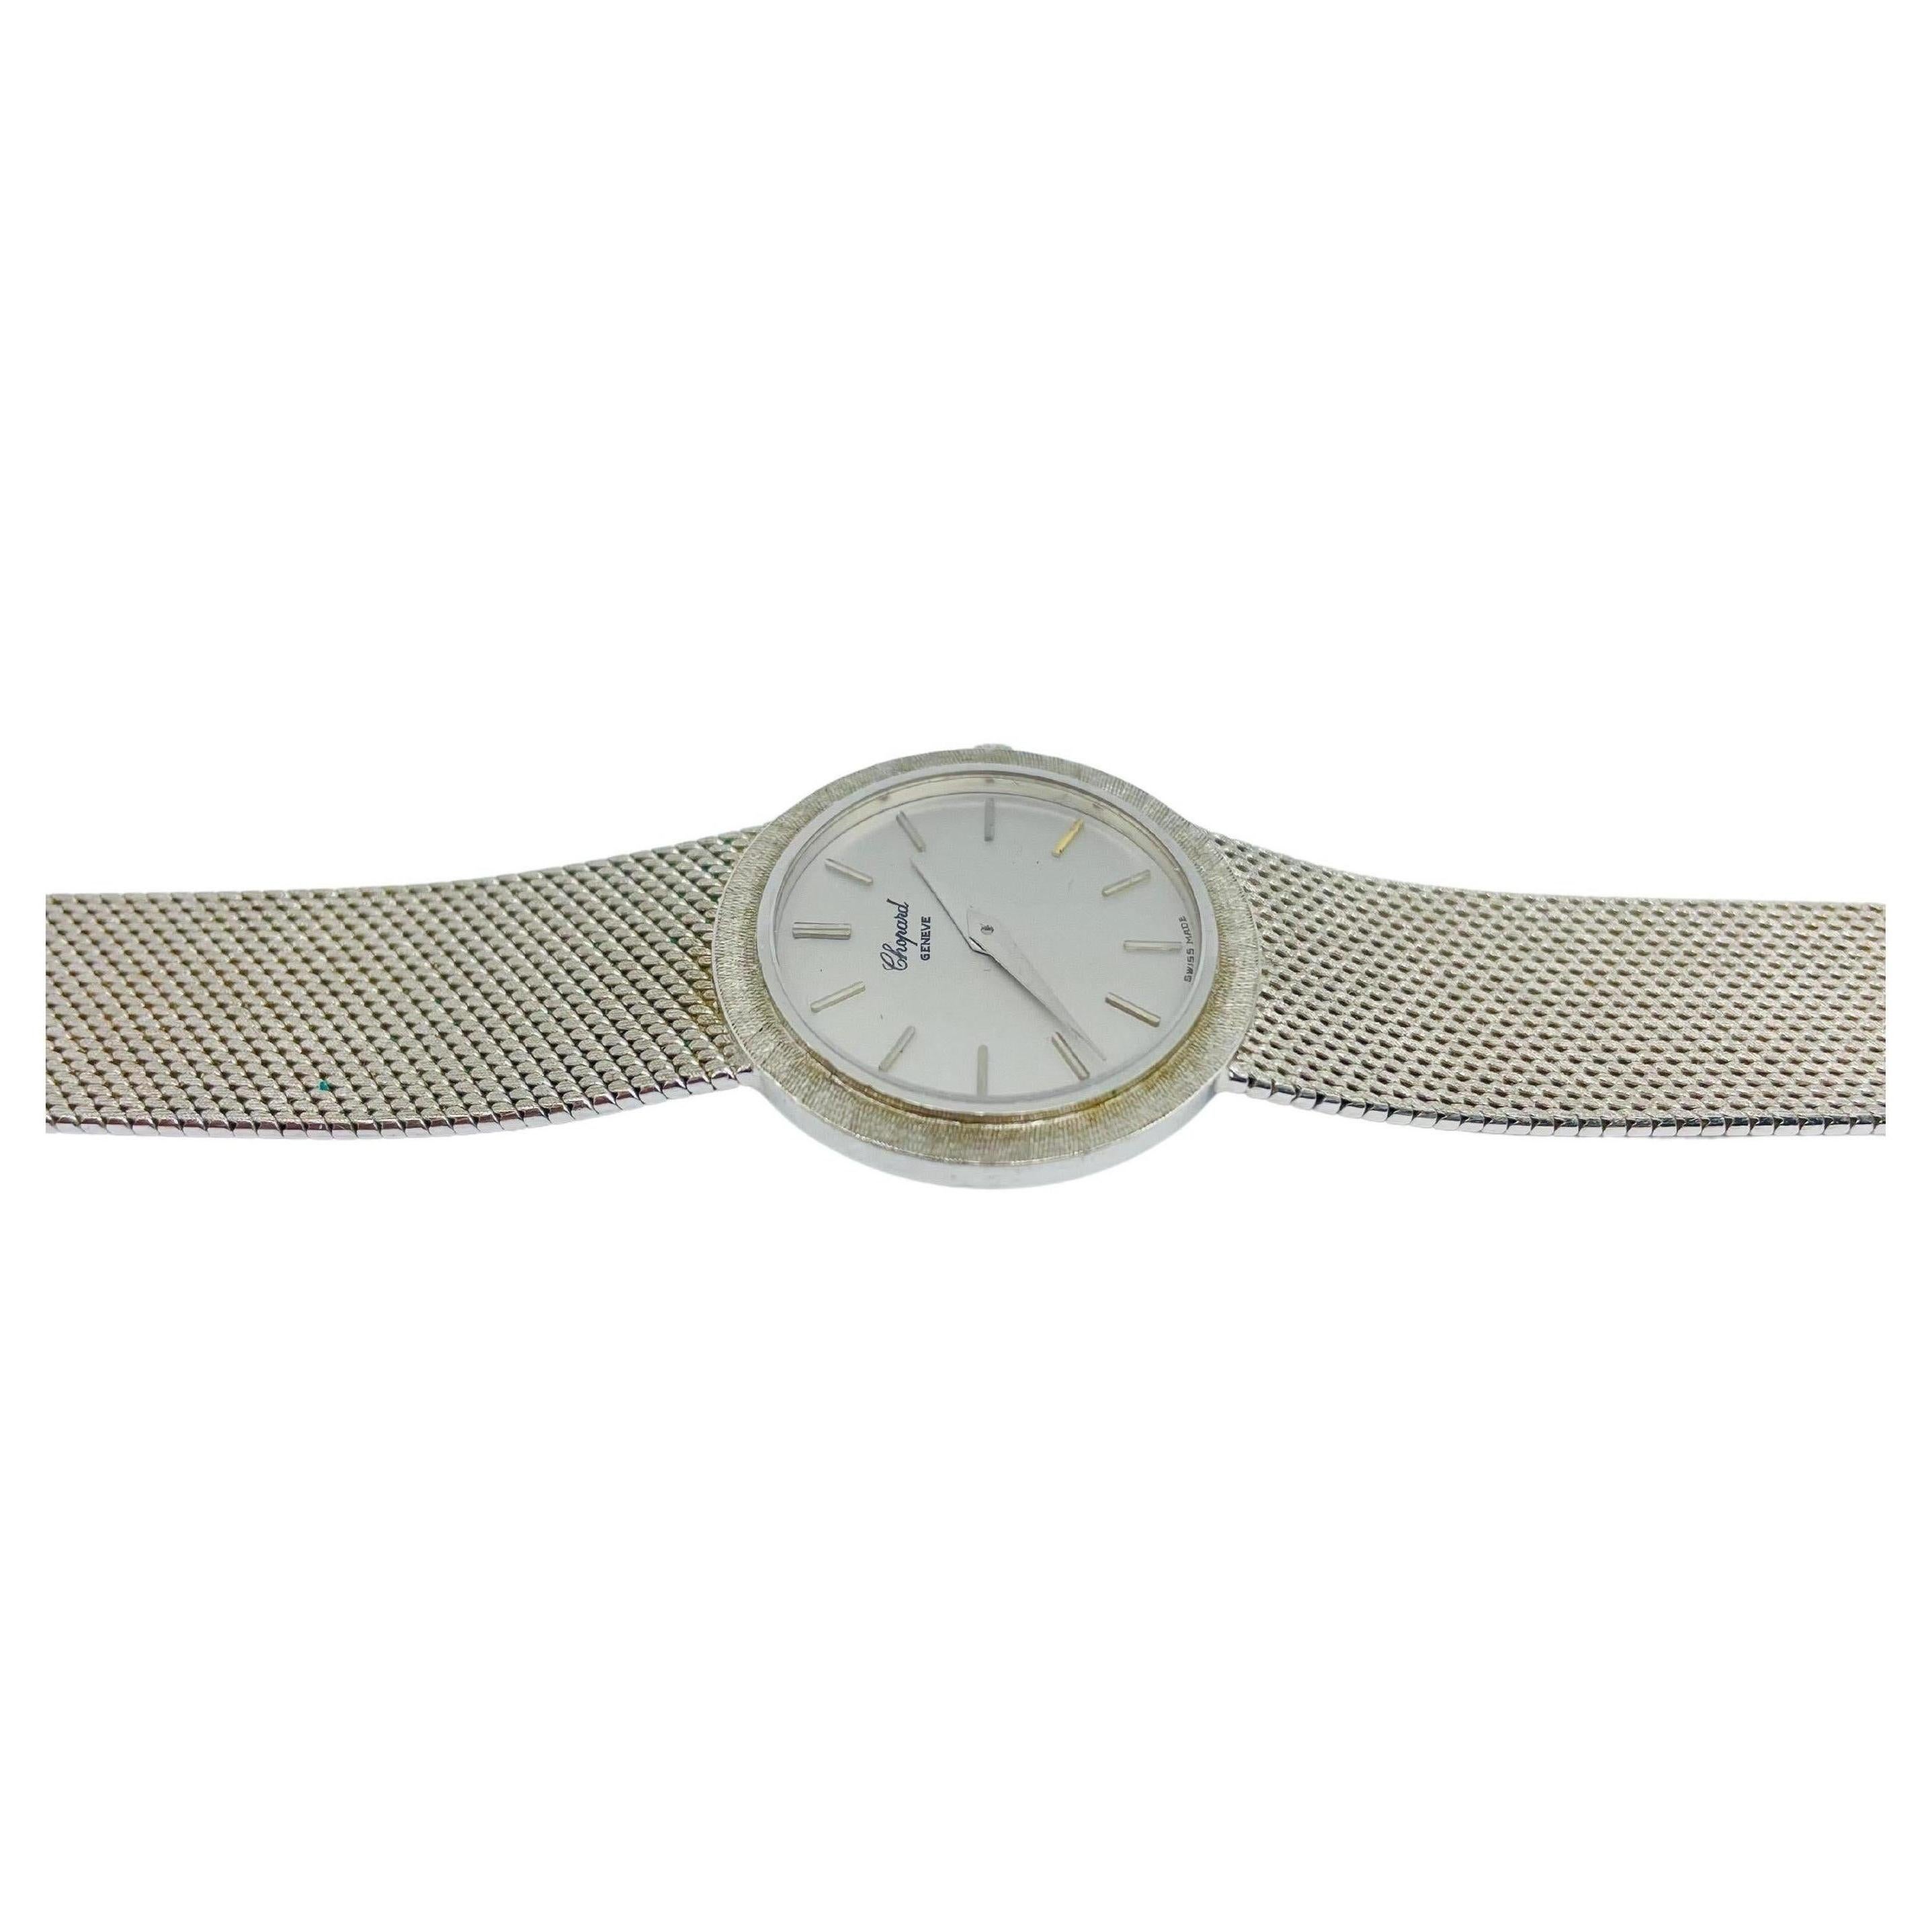  Montre Vintage Chopard pour femme en or blanc 750 - un véritable chef-d'œuvre de joaillerie et d'horlogerie. Cette montre est une pièce originale de Chopard, accompagnée d'un certificat et d'une boîte, ce qui en fait un ajout rare et précieux à